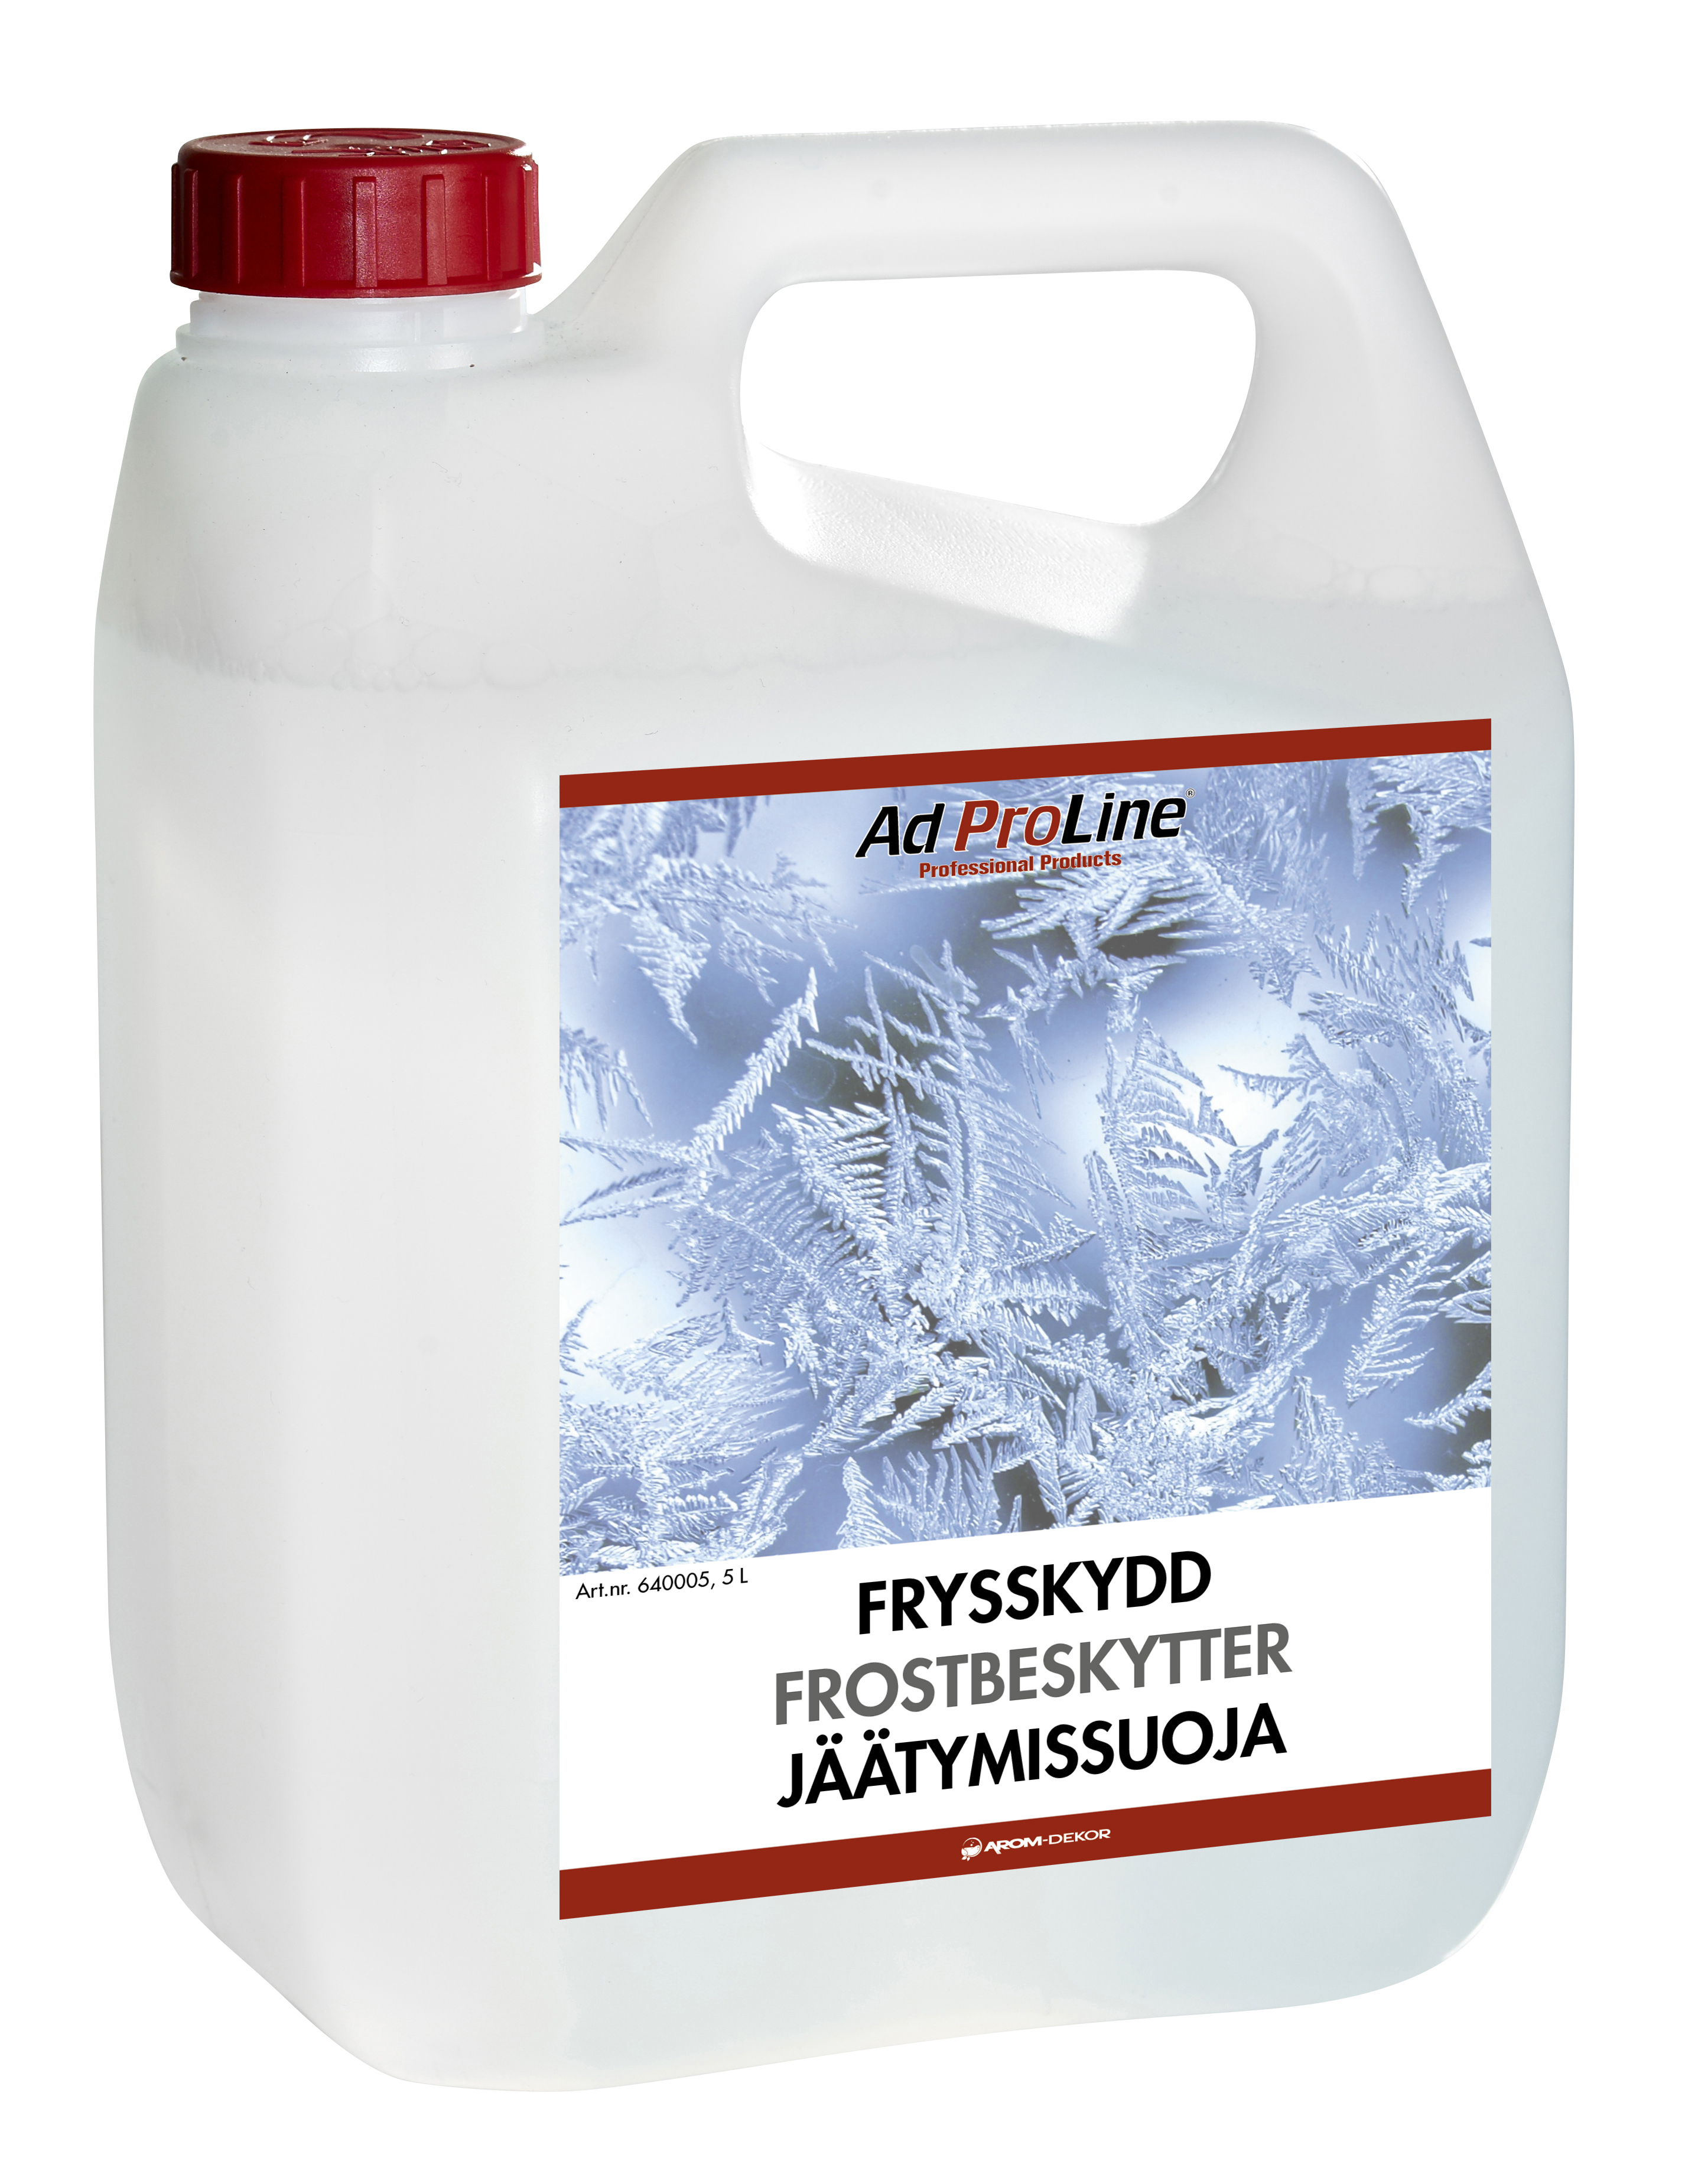 AdProLine® Frysskydd, 5 liter dunk-image